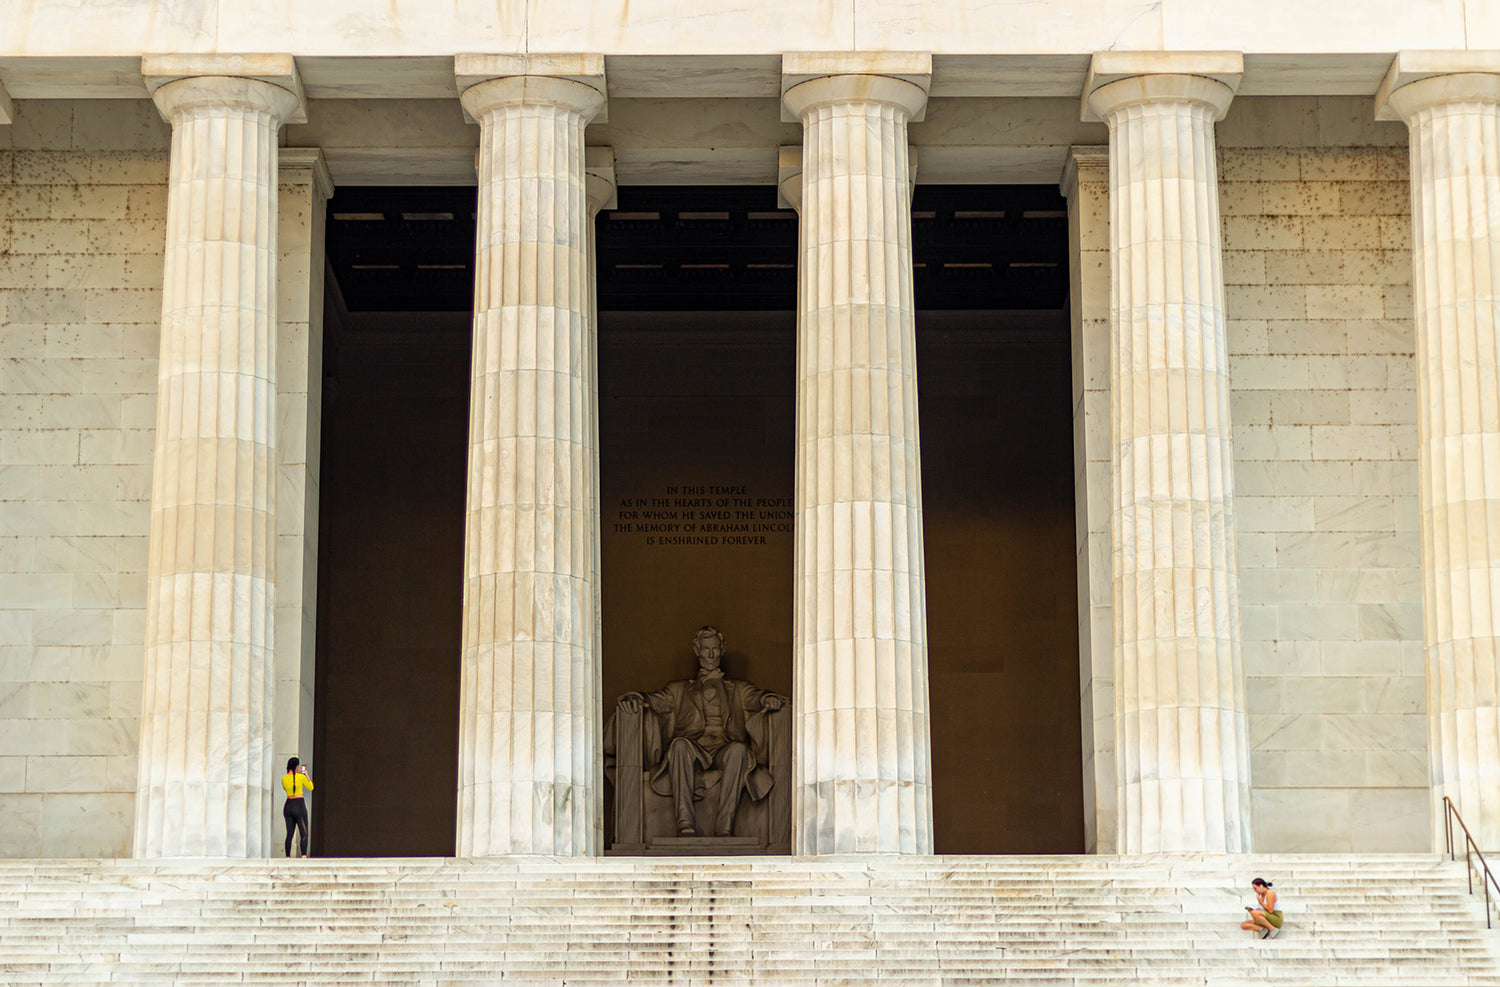 The Lincoln Memorial pfa order